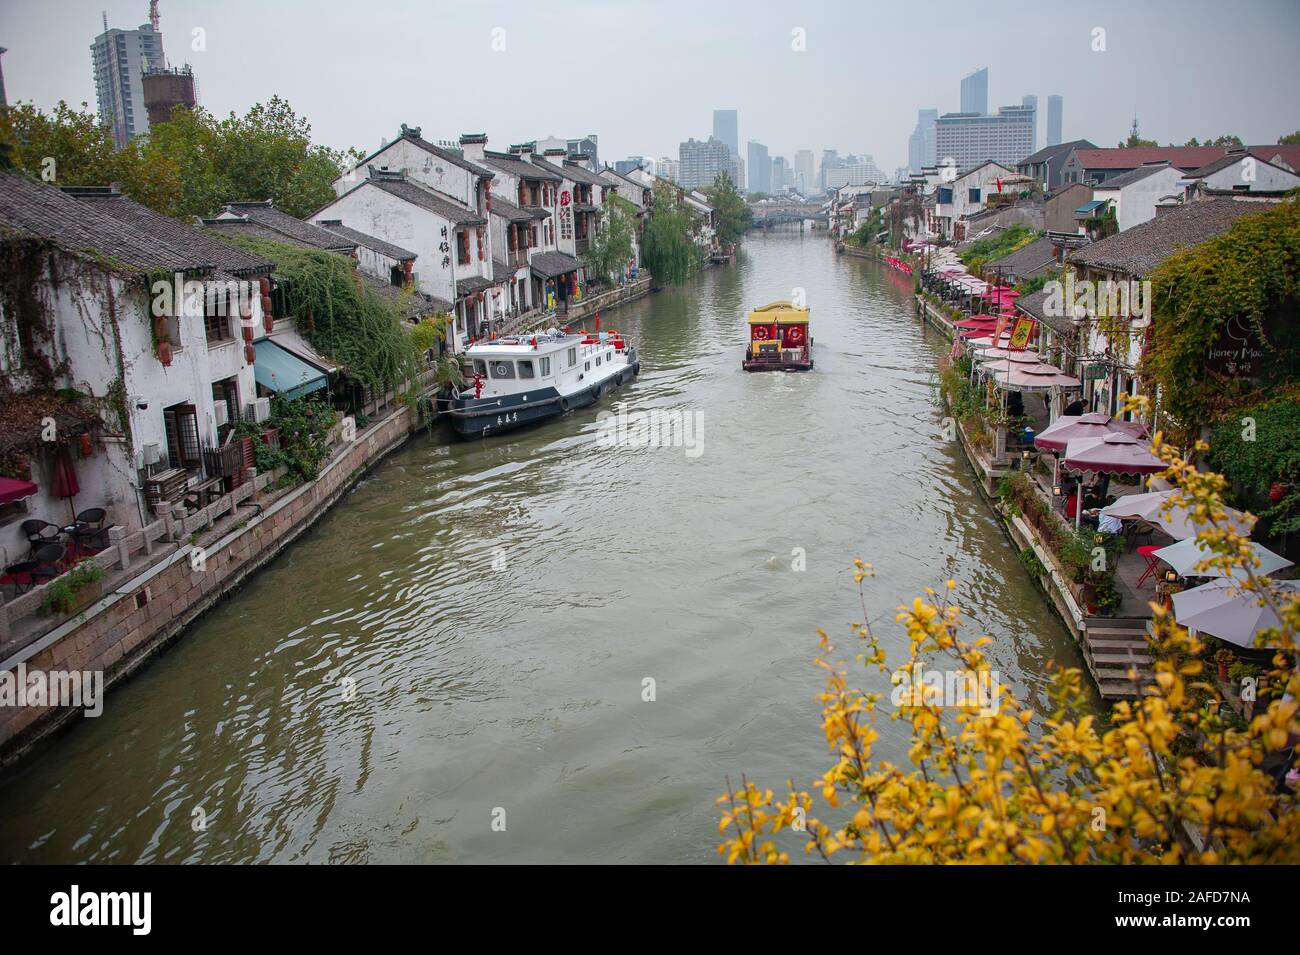 Vues canal pittoresque vieille ville de Wuxi, Jiangsu Province, China. Partie d'un réseau d'eau, reliées par le Grand Canal - la Chine. Banque D'Images